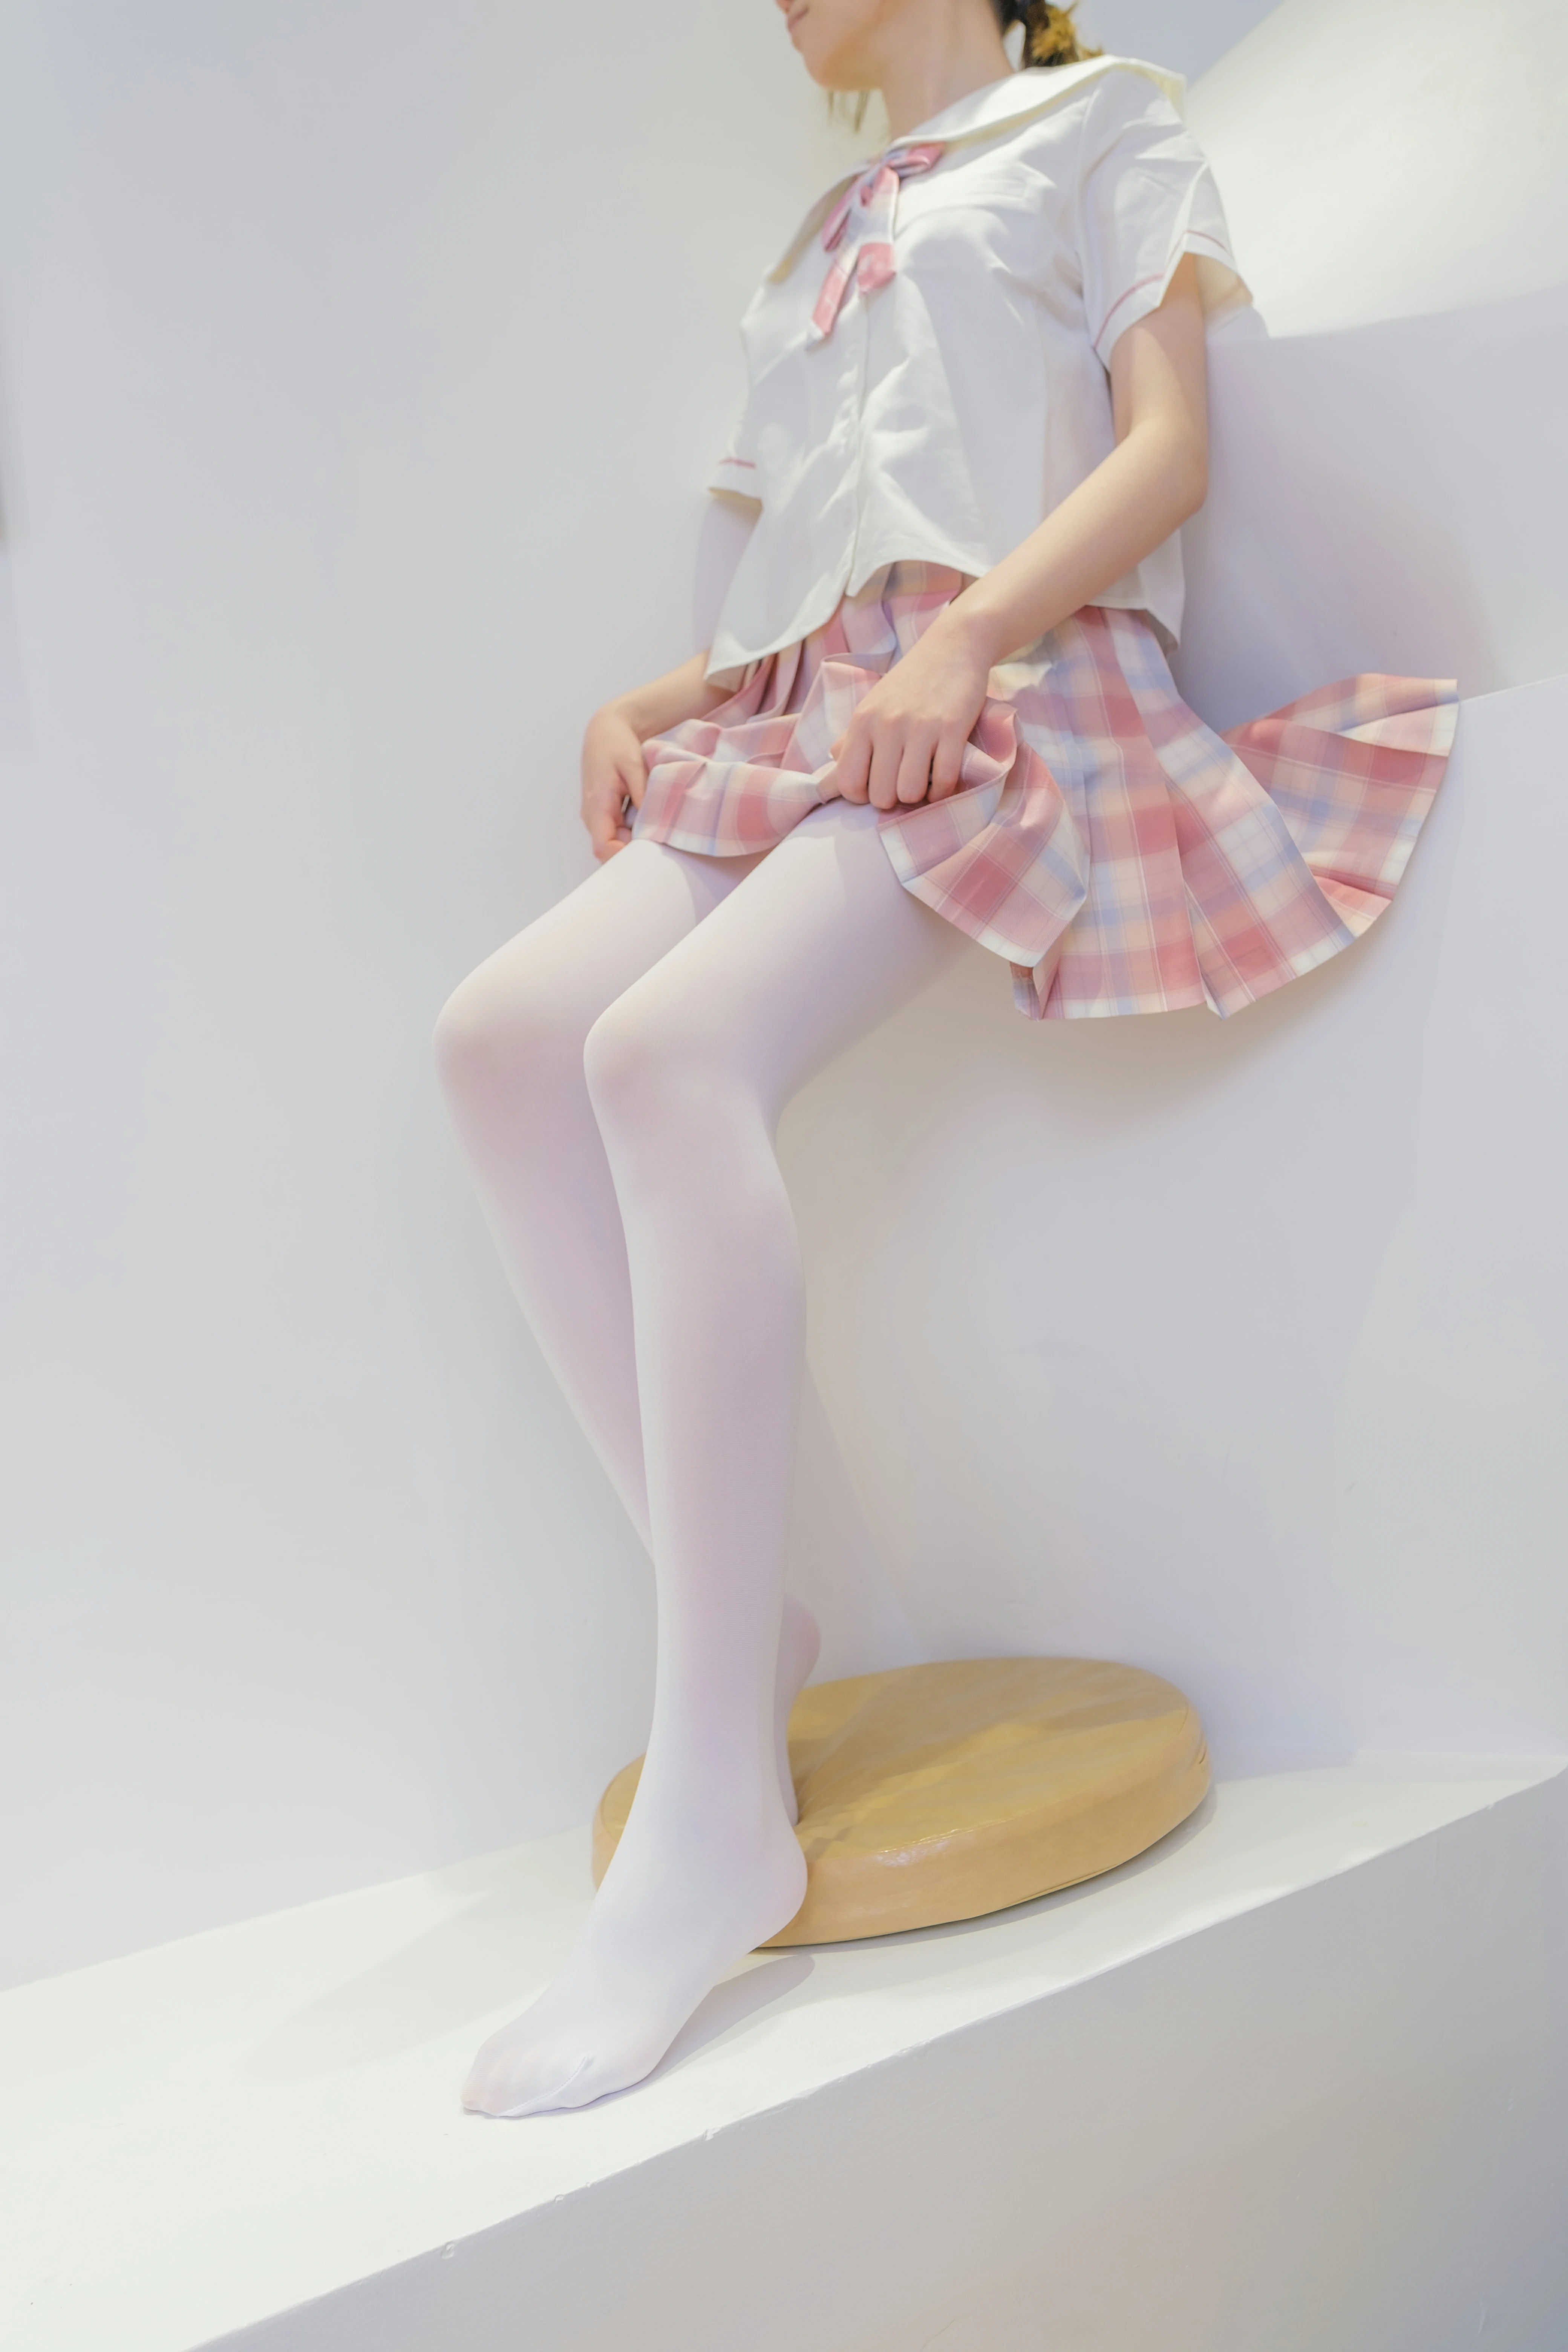 [森萝财团]GZAY3 酒店JK制服小萝莉 白色衬衫与粉色短裙加白色丝袜美腿性感私房写真集,0010